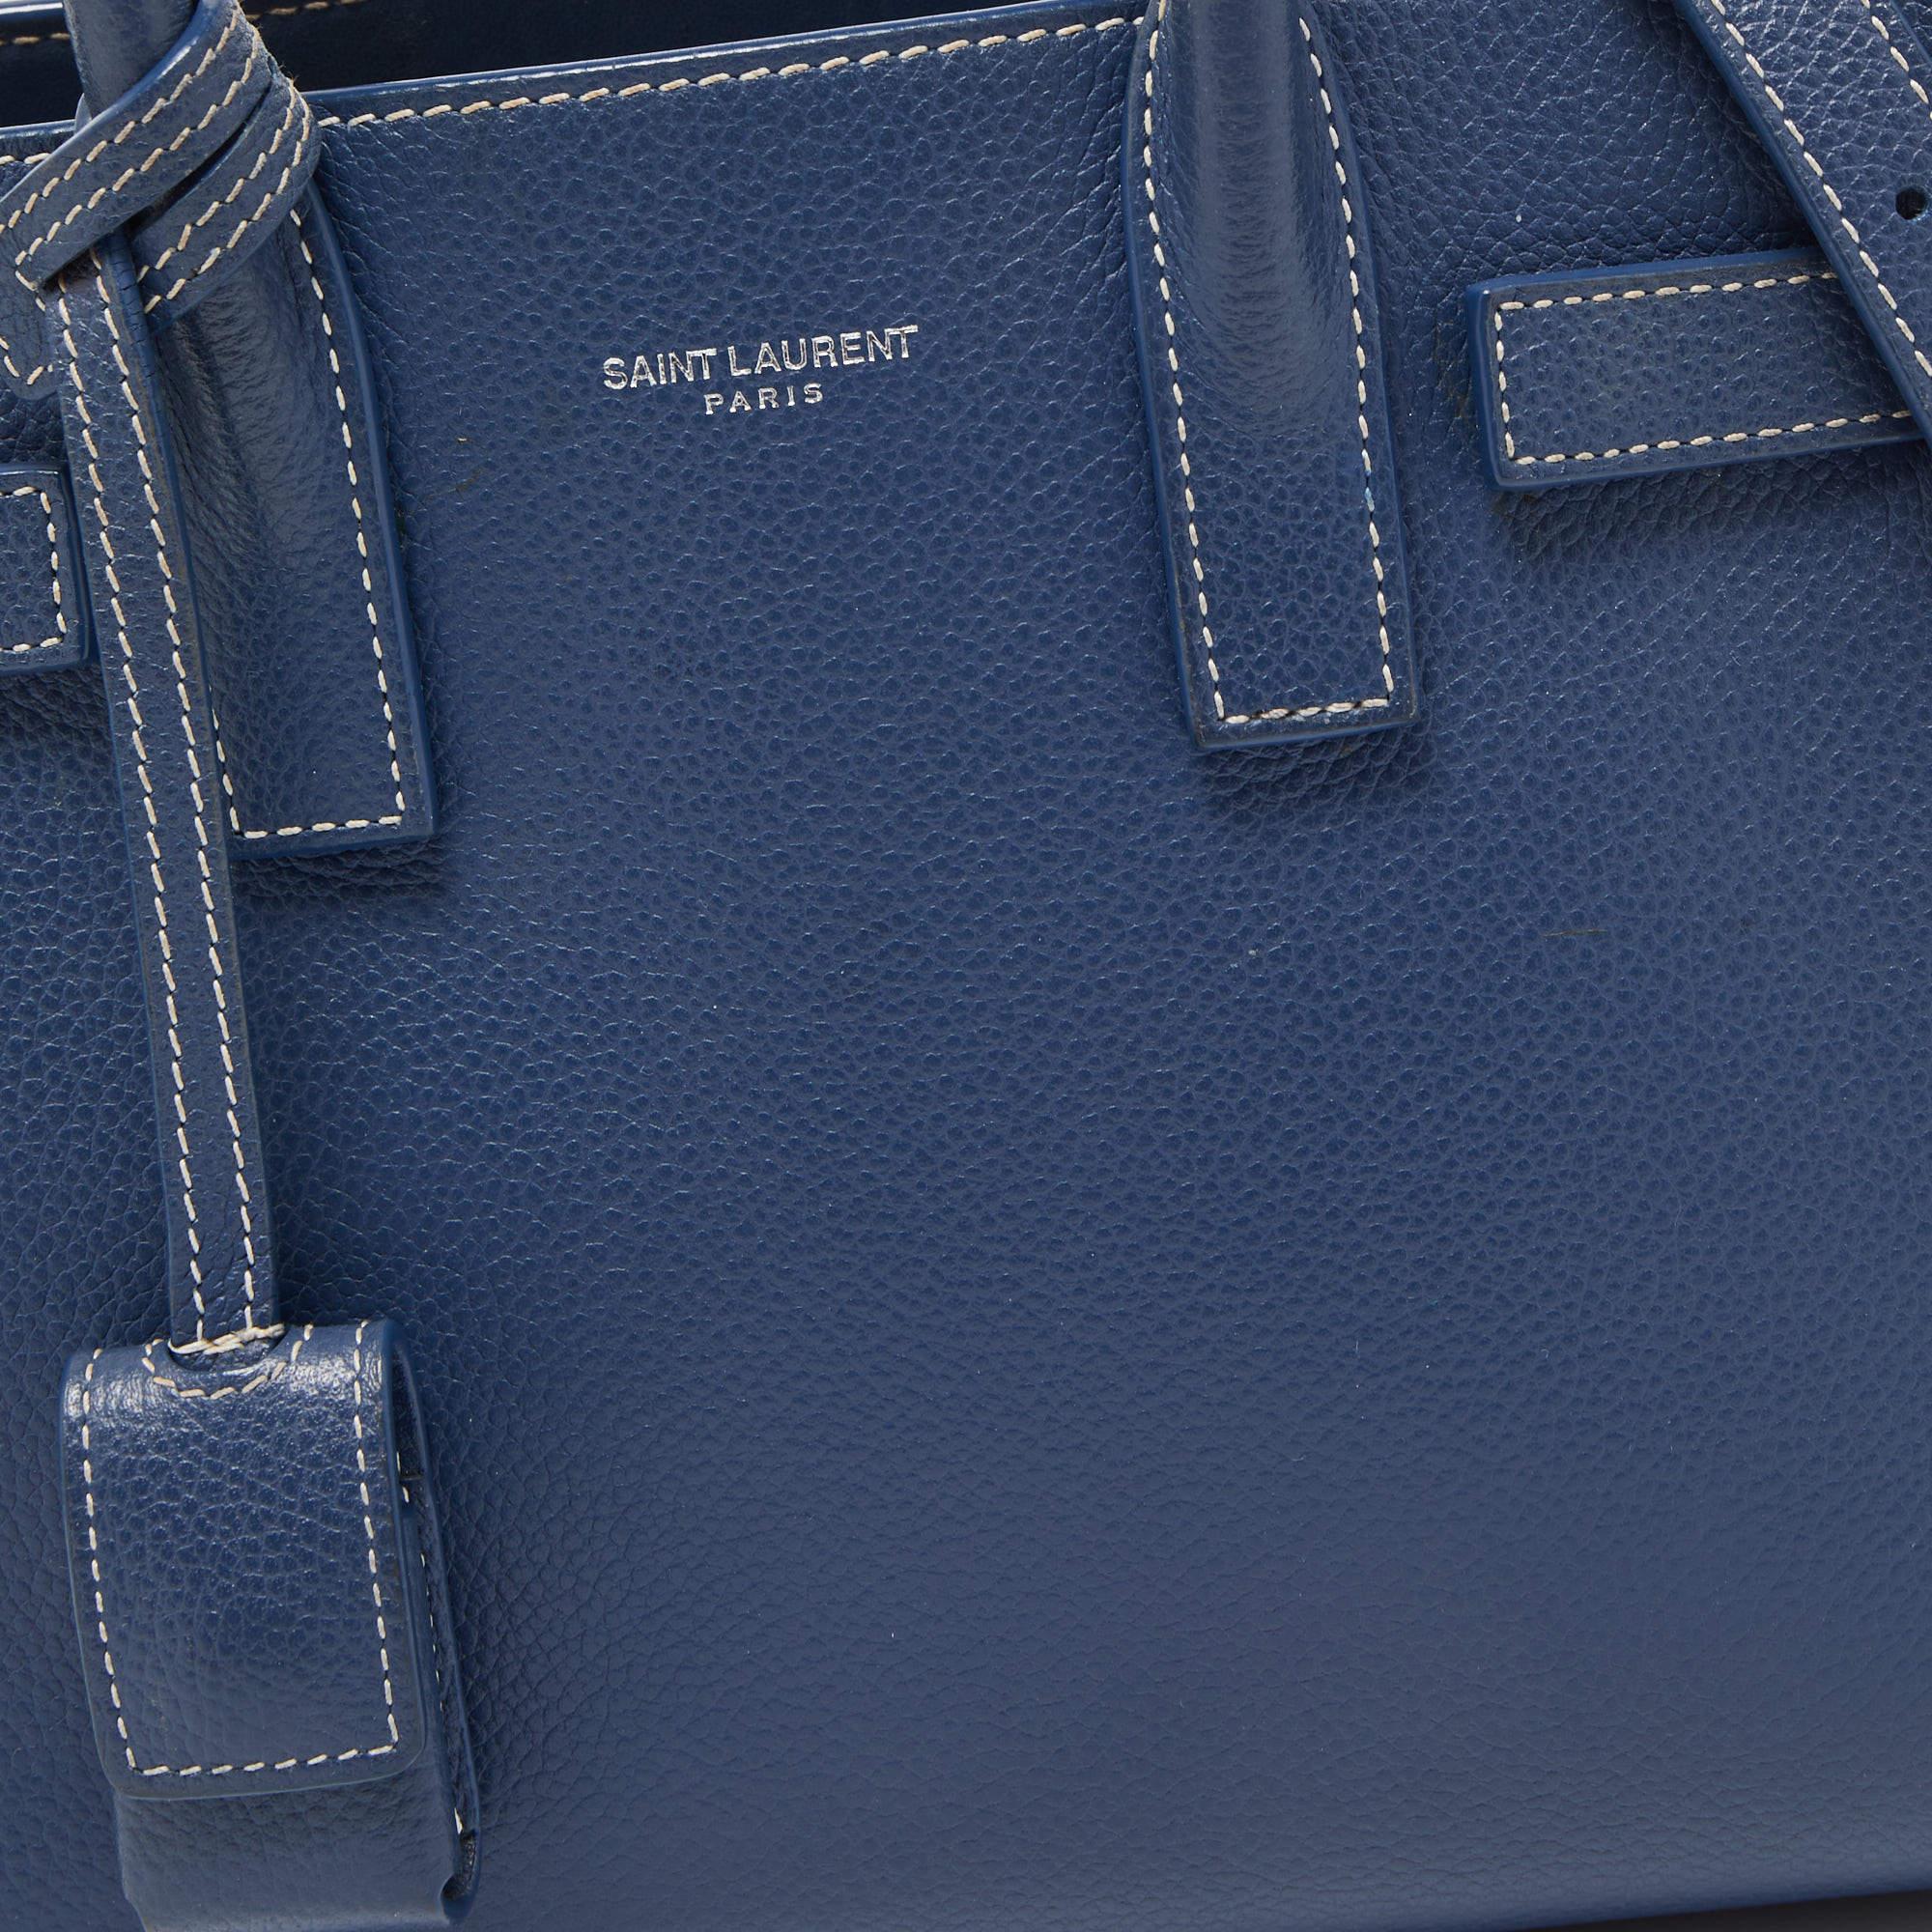 Saint Laurent Blue Leather Nano Classic Sac De Jour Tote 3